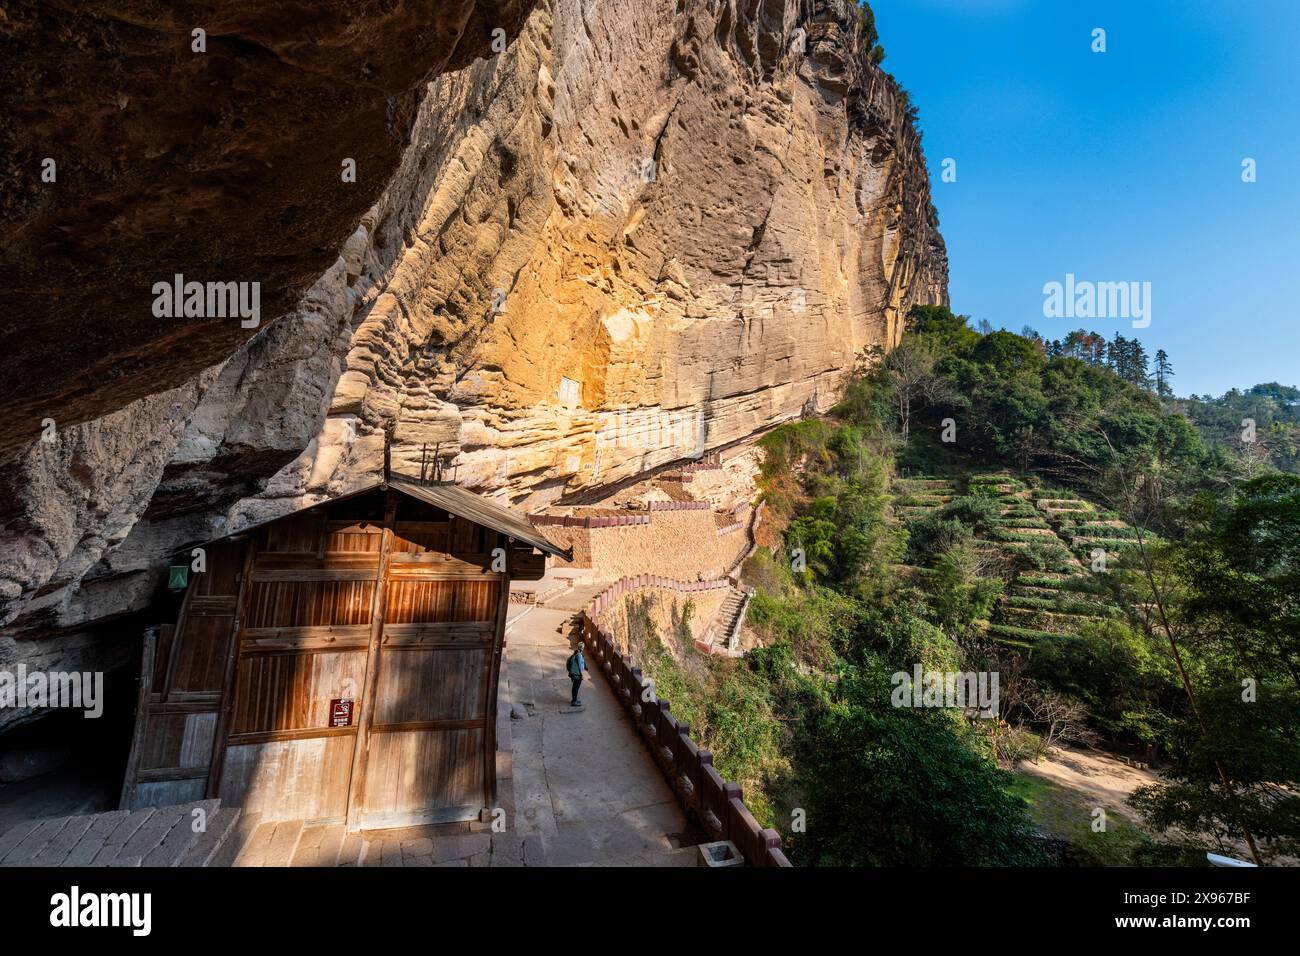 Tempel in riesigen Felswänden, Wuyi-Berge, UNESCO-Weltkulturerbe, Fujian, China, Asien Stockfoto